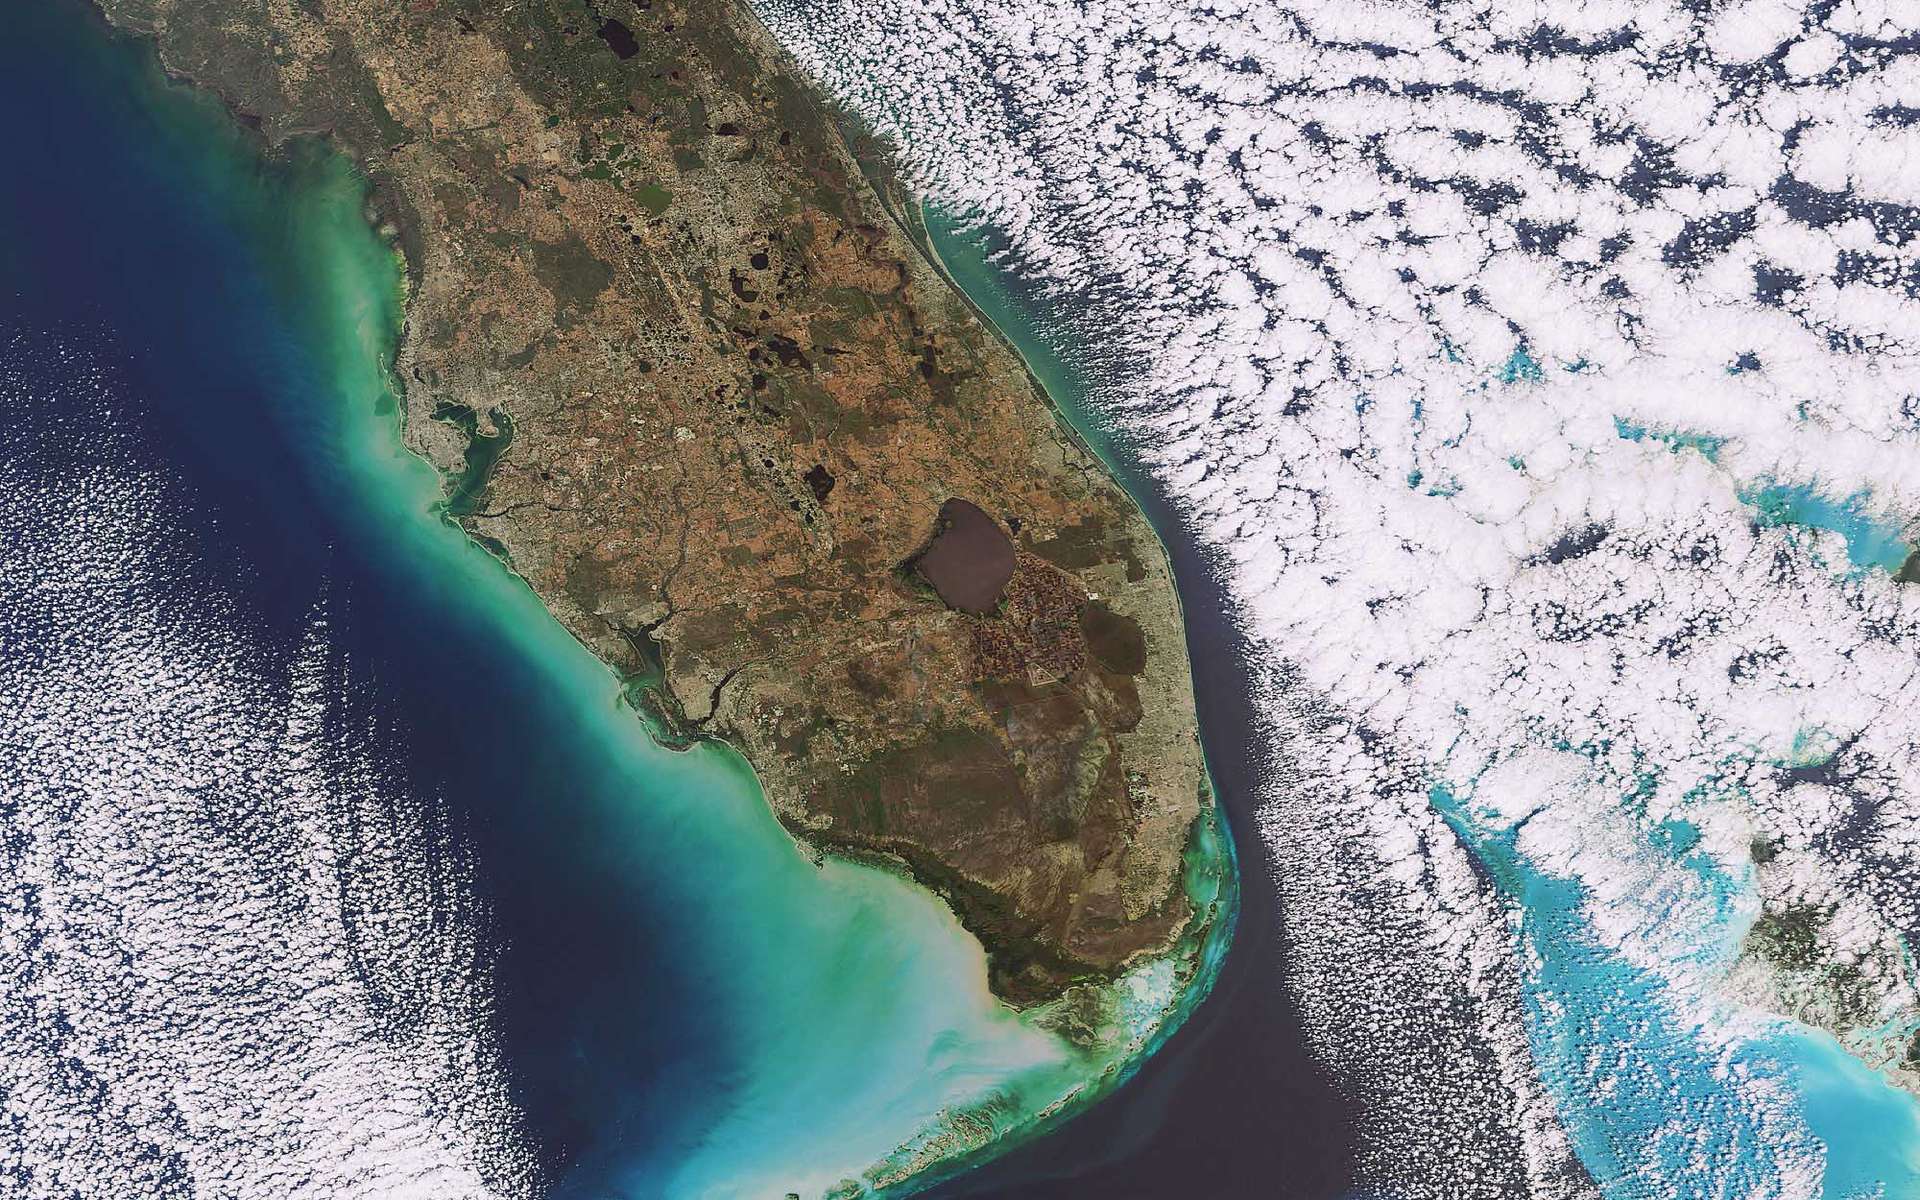 Cette image prise le 5 février 2009 par la caméra Meris (Medium Resolution Imaging Spectrometer) d’Envisat montre la pointe sud de la Floride, qui se situe au sud-est des Etats-Unis. La péninsule s’avance entre l’océan Atlantique (à droite) et le golfe du Mexique (à gauche) sur plus de 550 km. La résolution est de 300 mètres par pixel. La tache brune circulaire est le lac Okeechobee, le troisième plus grand lac d’eau douce entièrement situé aux Etats-Unis, après le lac Michigan et la lac Iliamna. Il couvre une surface d’environ 1.900 km2, pour 220 km de rivages et une profondeur moyenne de 4 m.